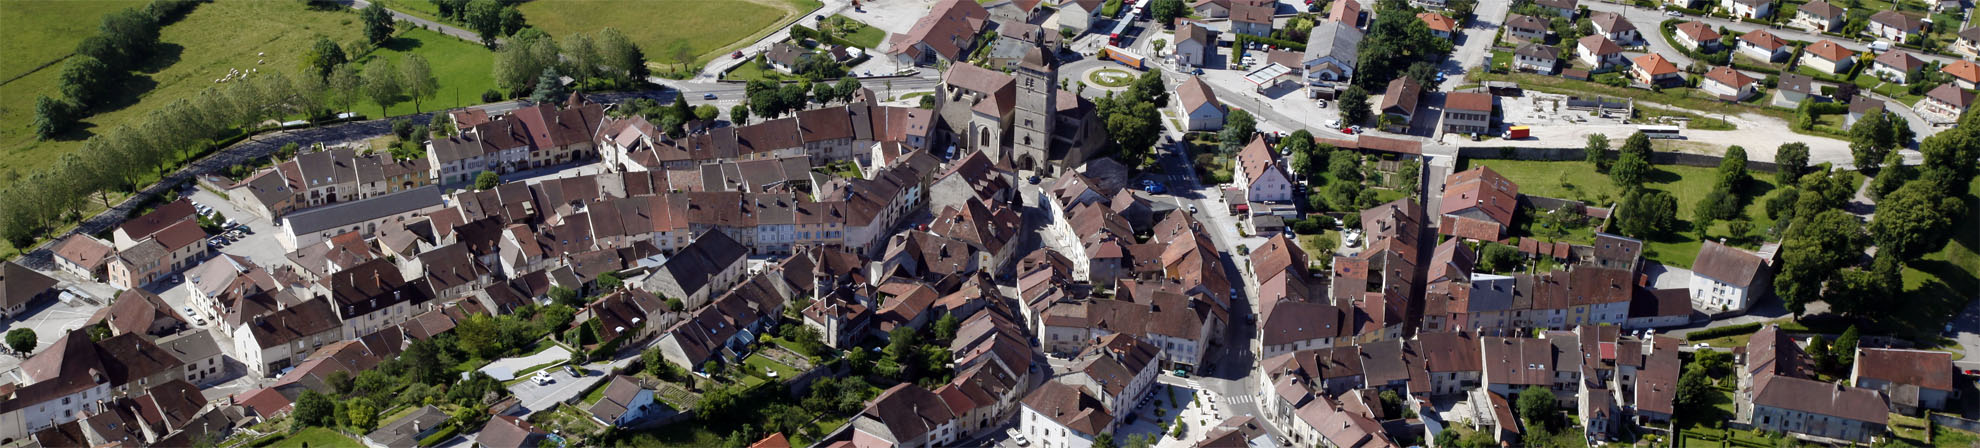 Orgelet, cité de caractère de Bourgogne Franche-Comté